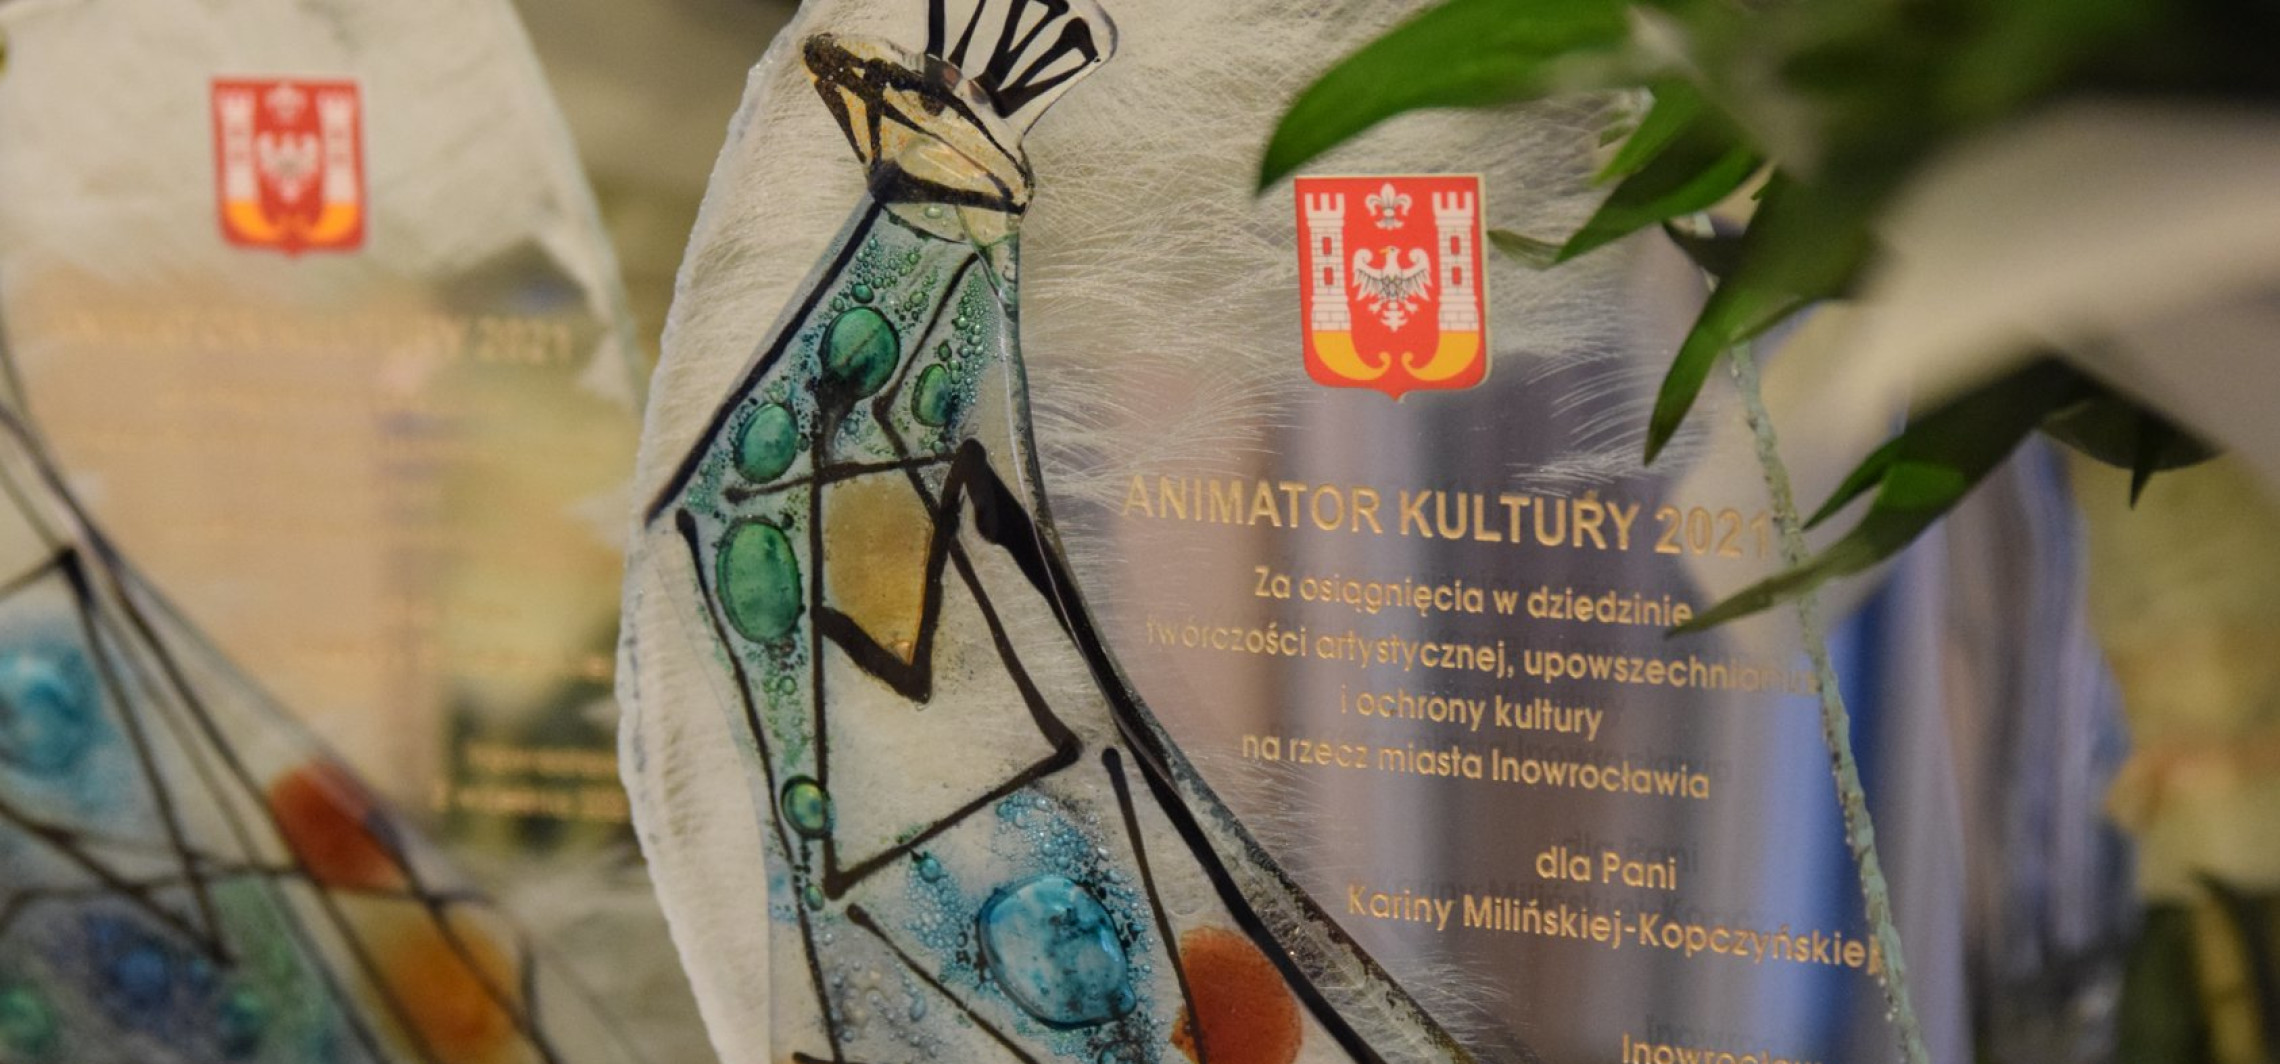 Inowrocław - Nagroda dla tych, którzy animują z kulturą